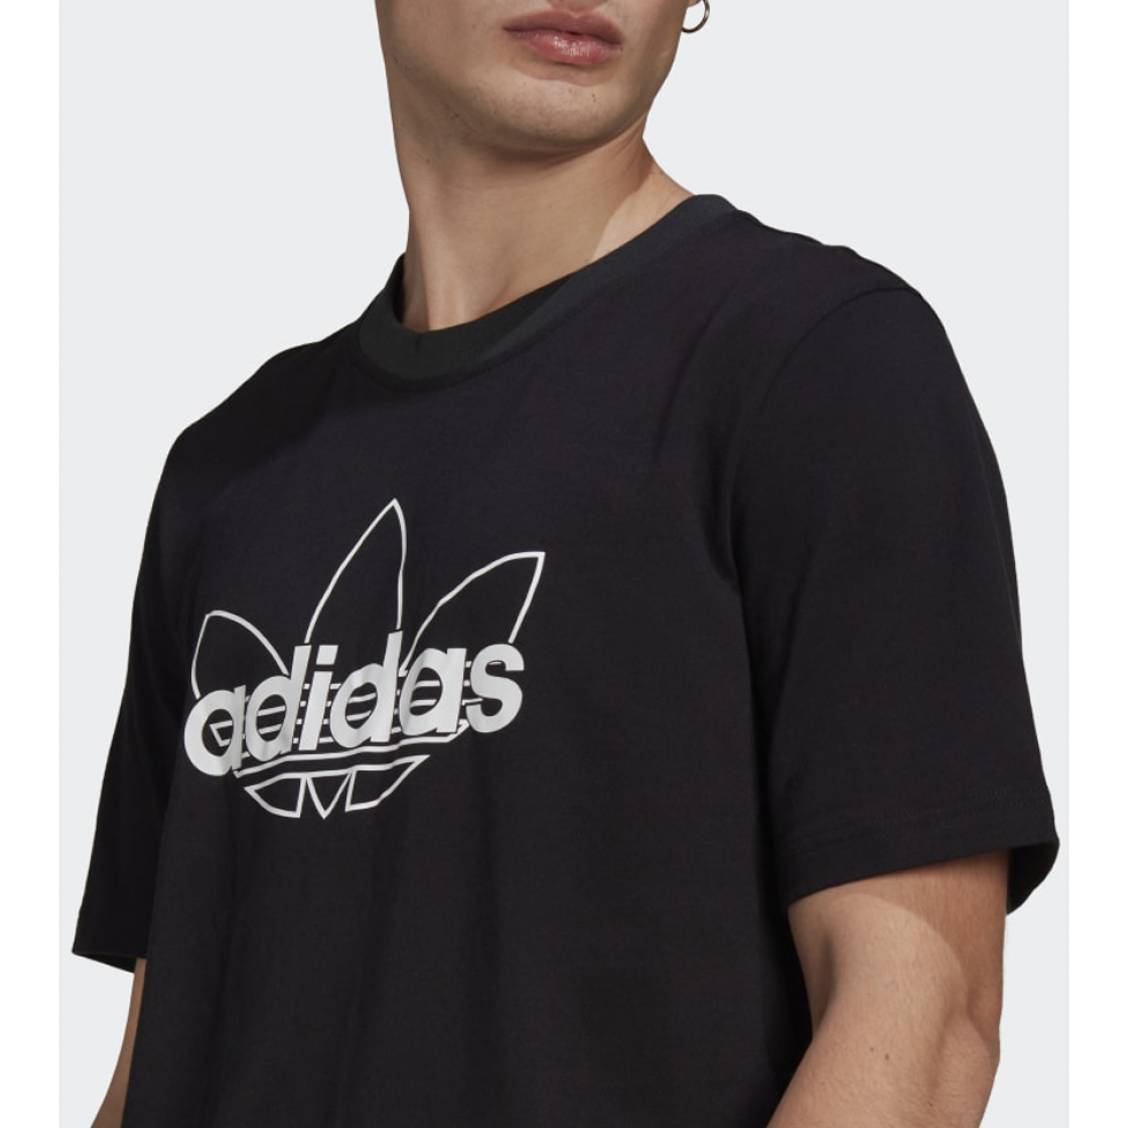 T-shirt adidas en coton blanc uni présentant une coupe droite et un large  logo noir débossé